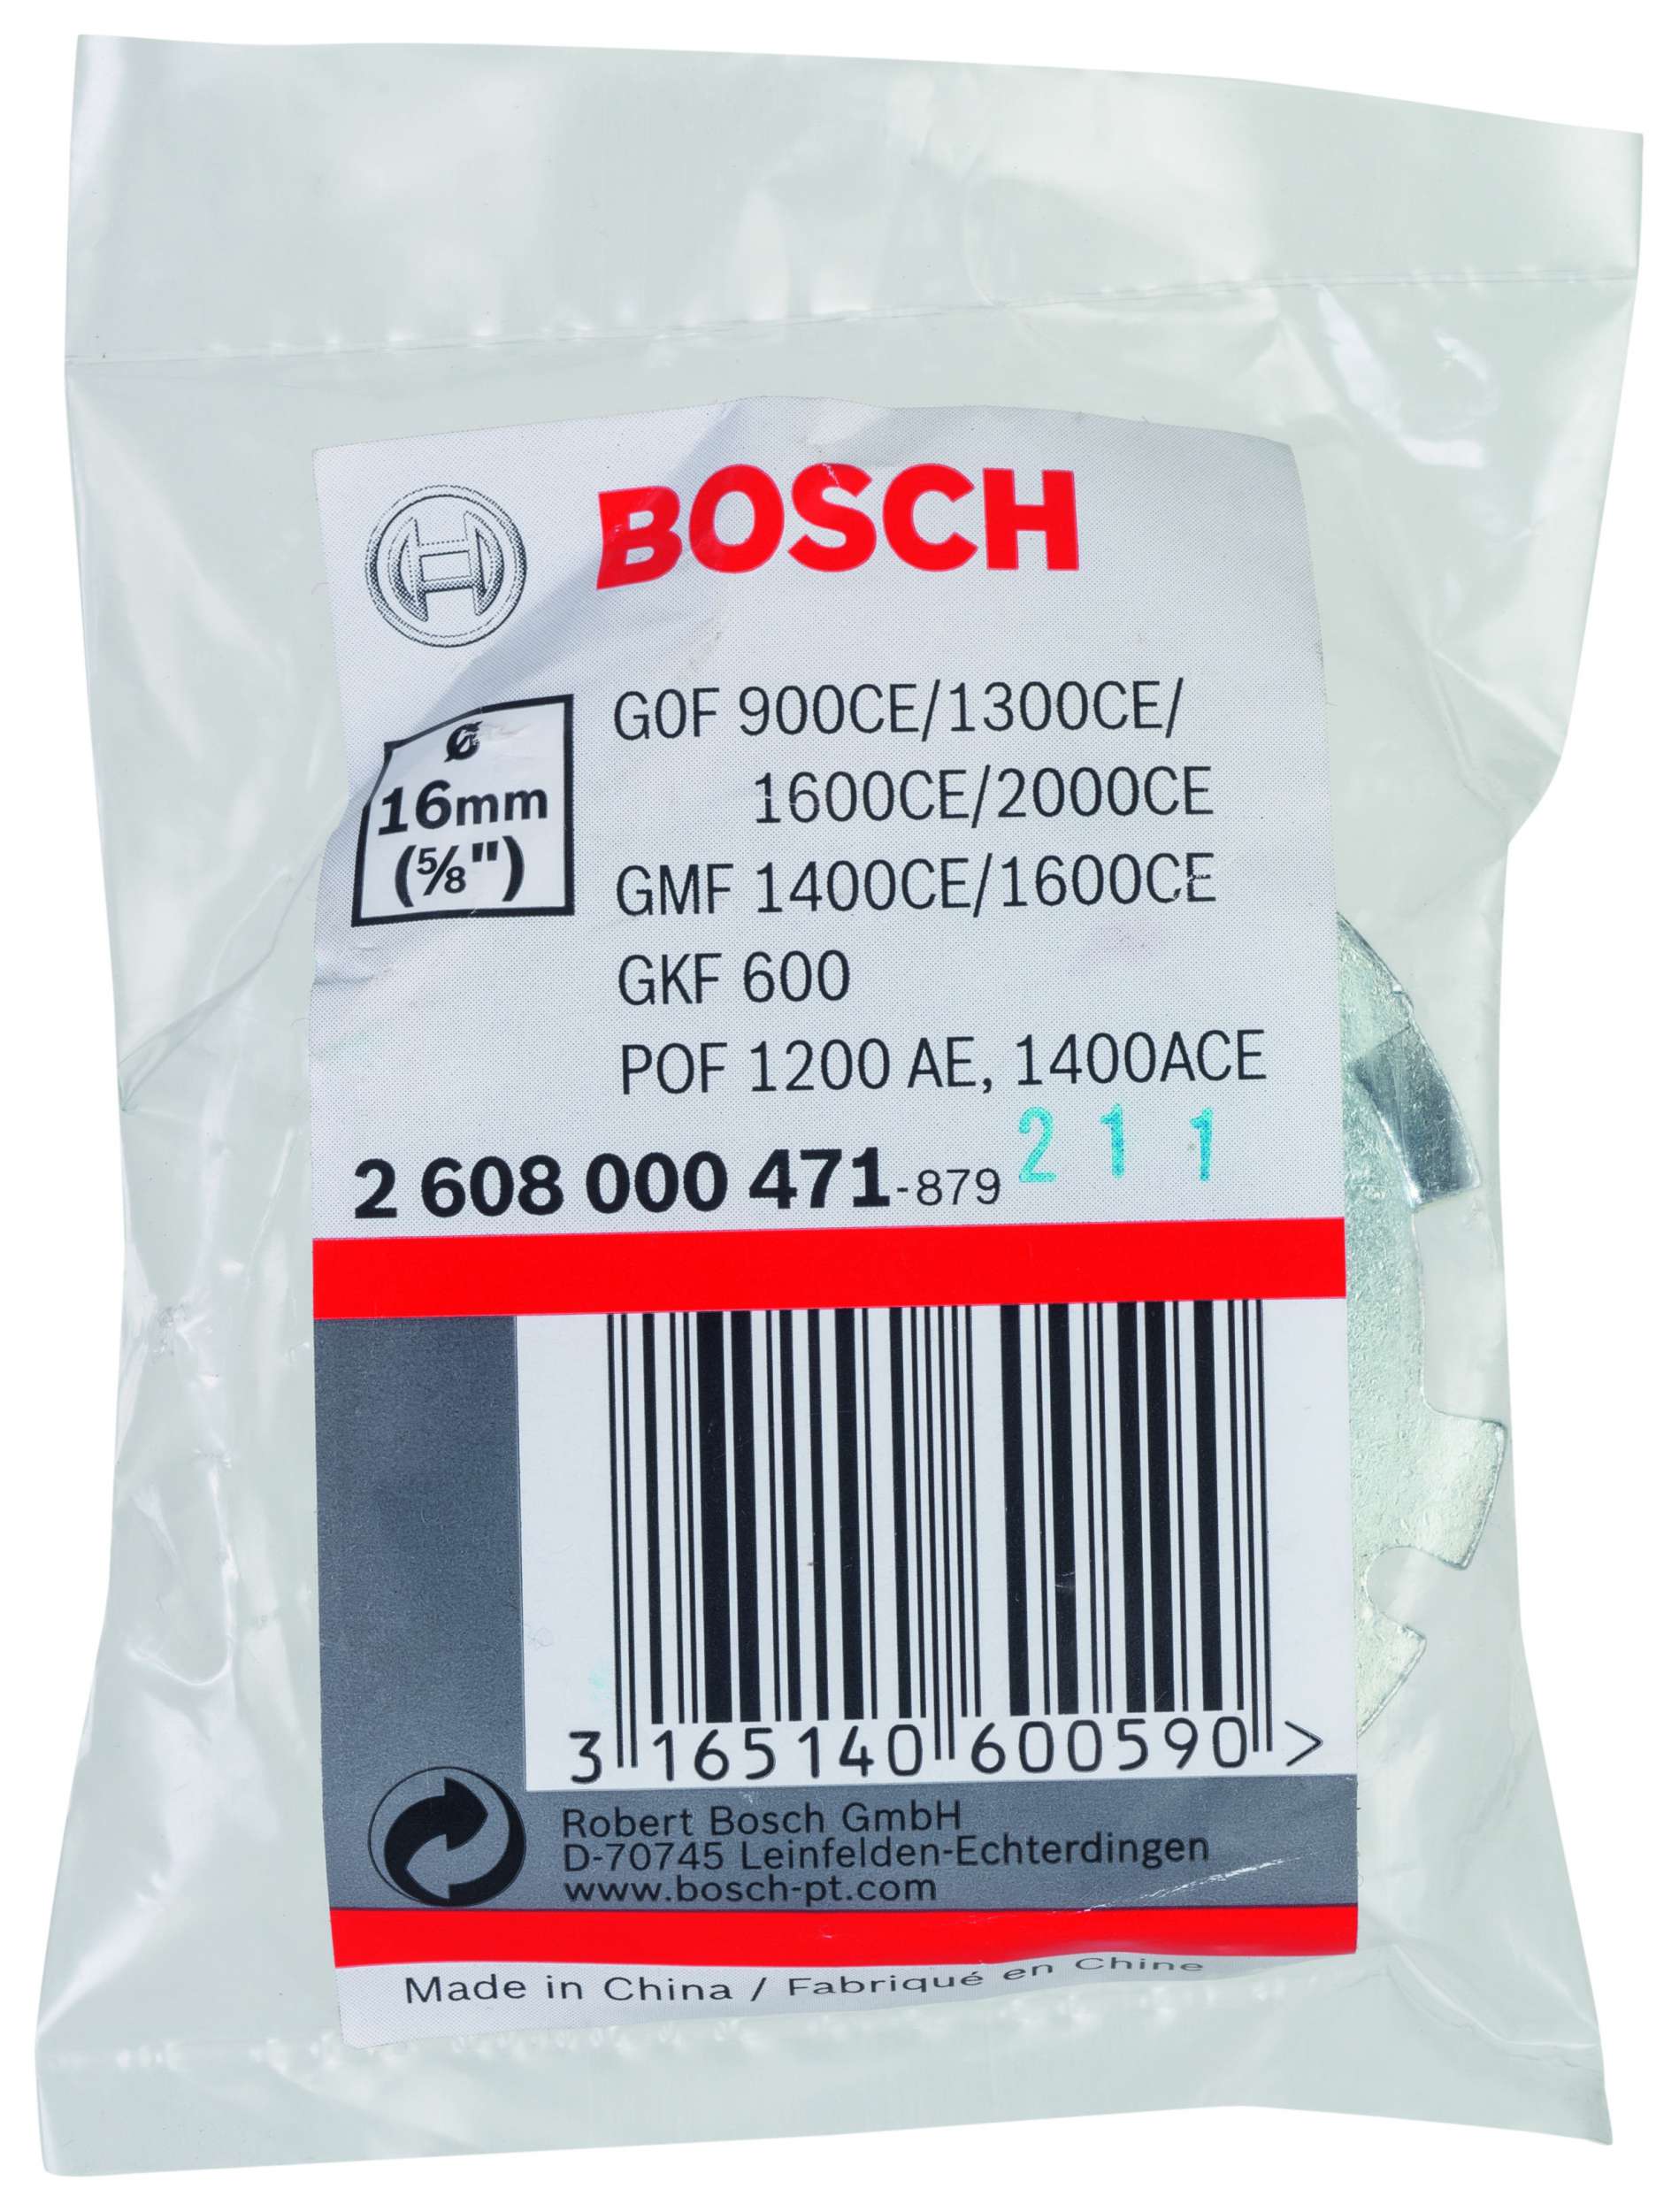 Bosch - Freze Kopyalama Sablonu 16 mm